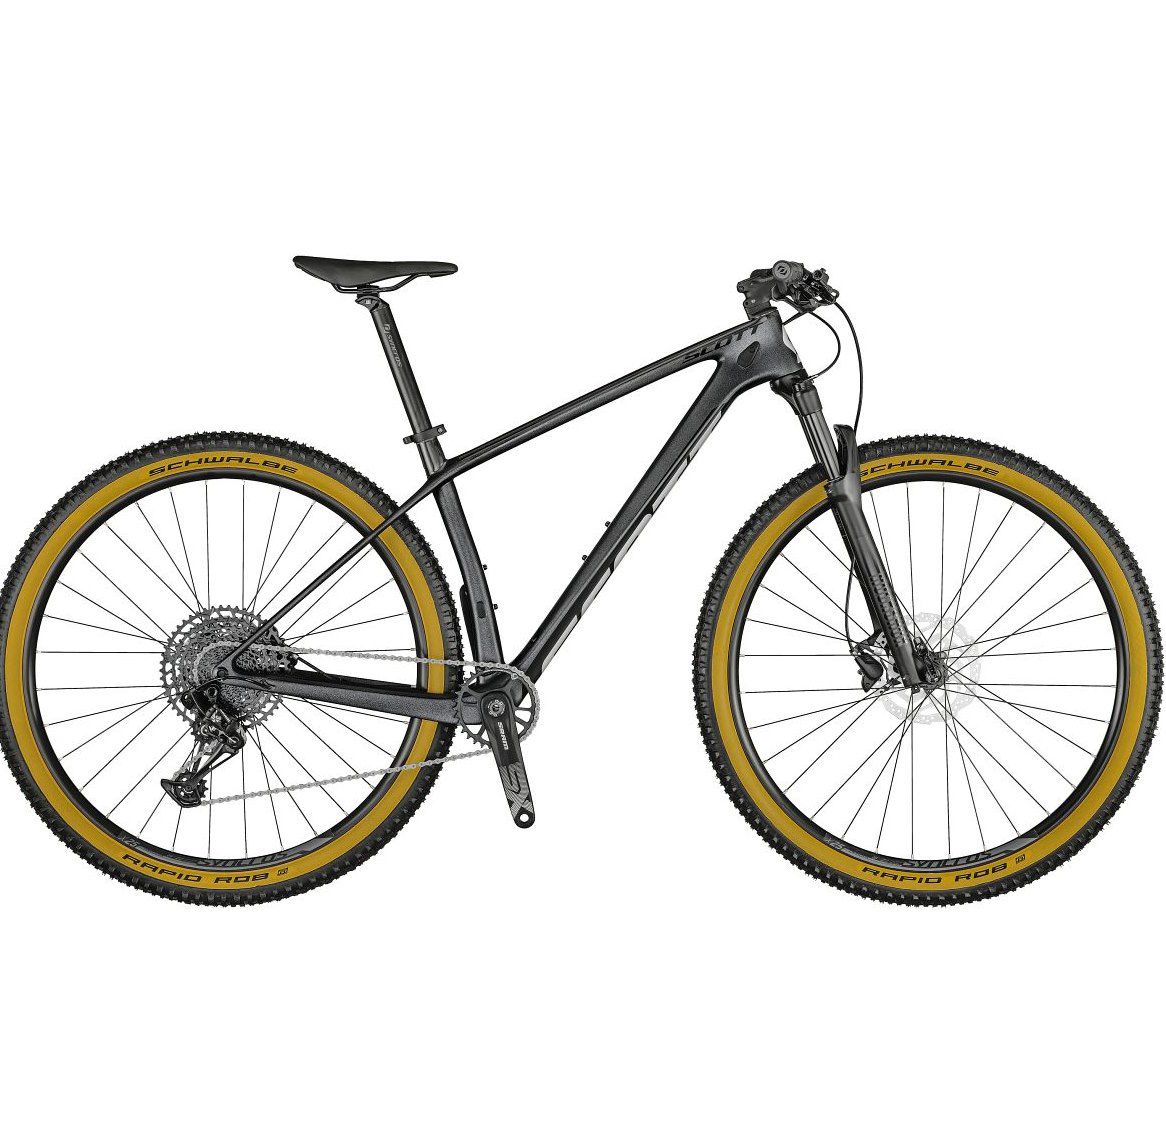 Scott Scale 940 Cross Country Bike mit Carbonrahmen für 1.379€ (statt 1.708€)